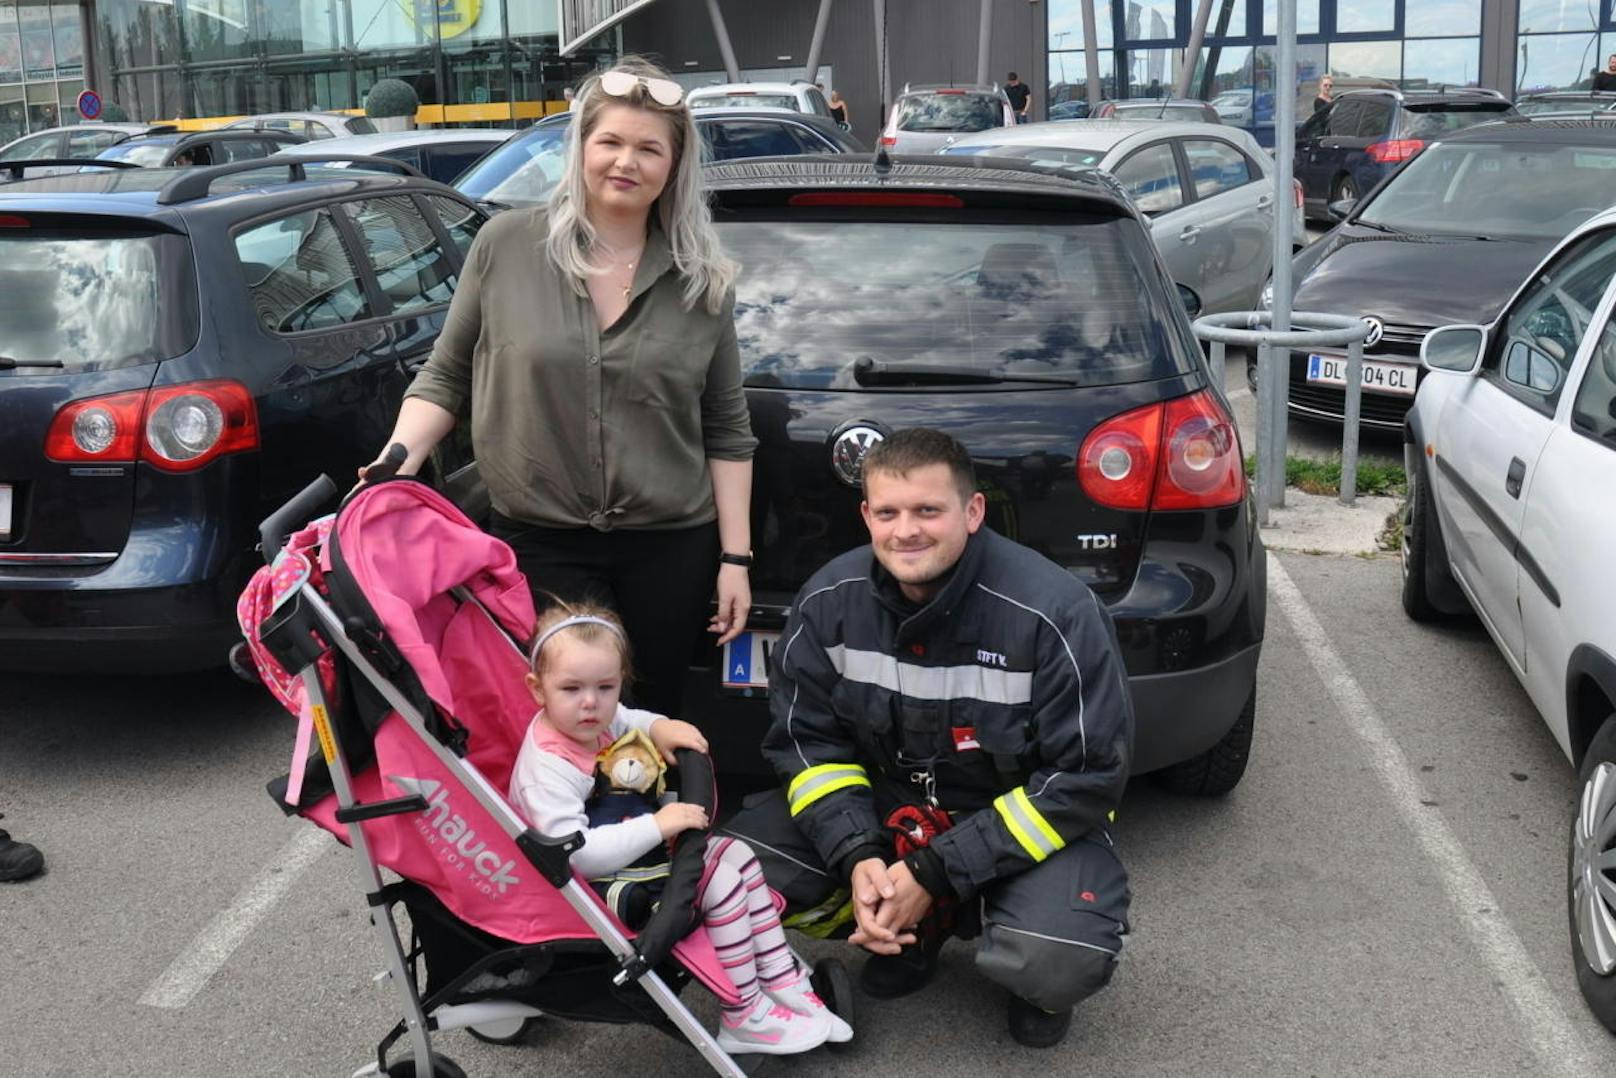 Die Feuerwehr befreite rasch das Mädchen aus dem Auto. Mama und Kind wurden wieder vereint.